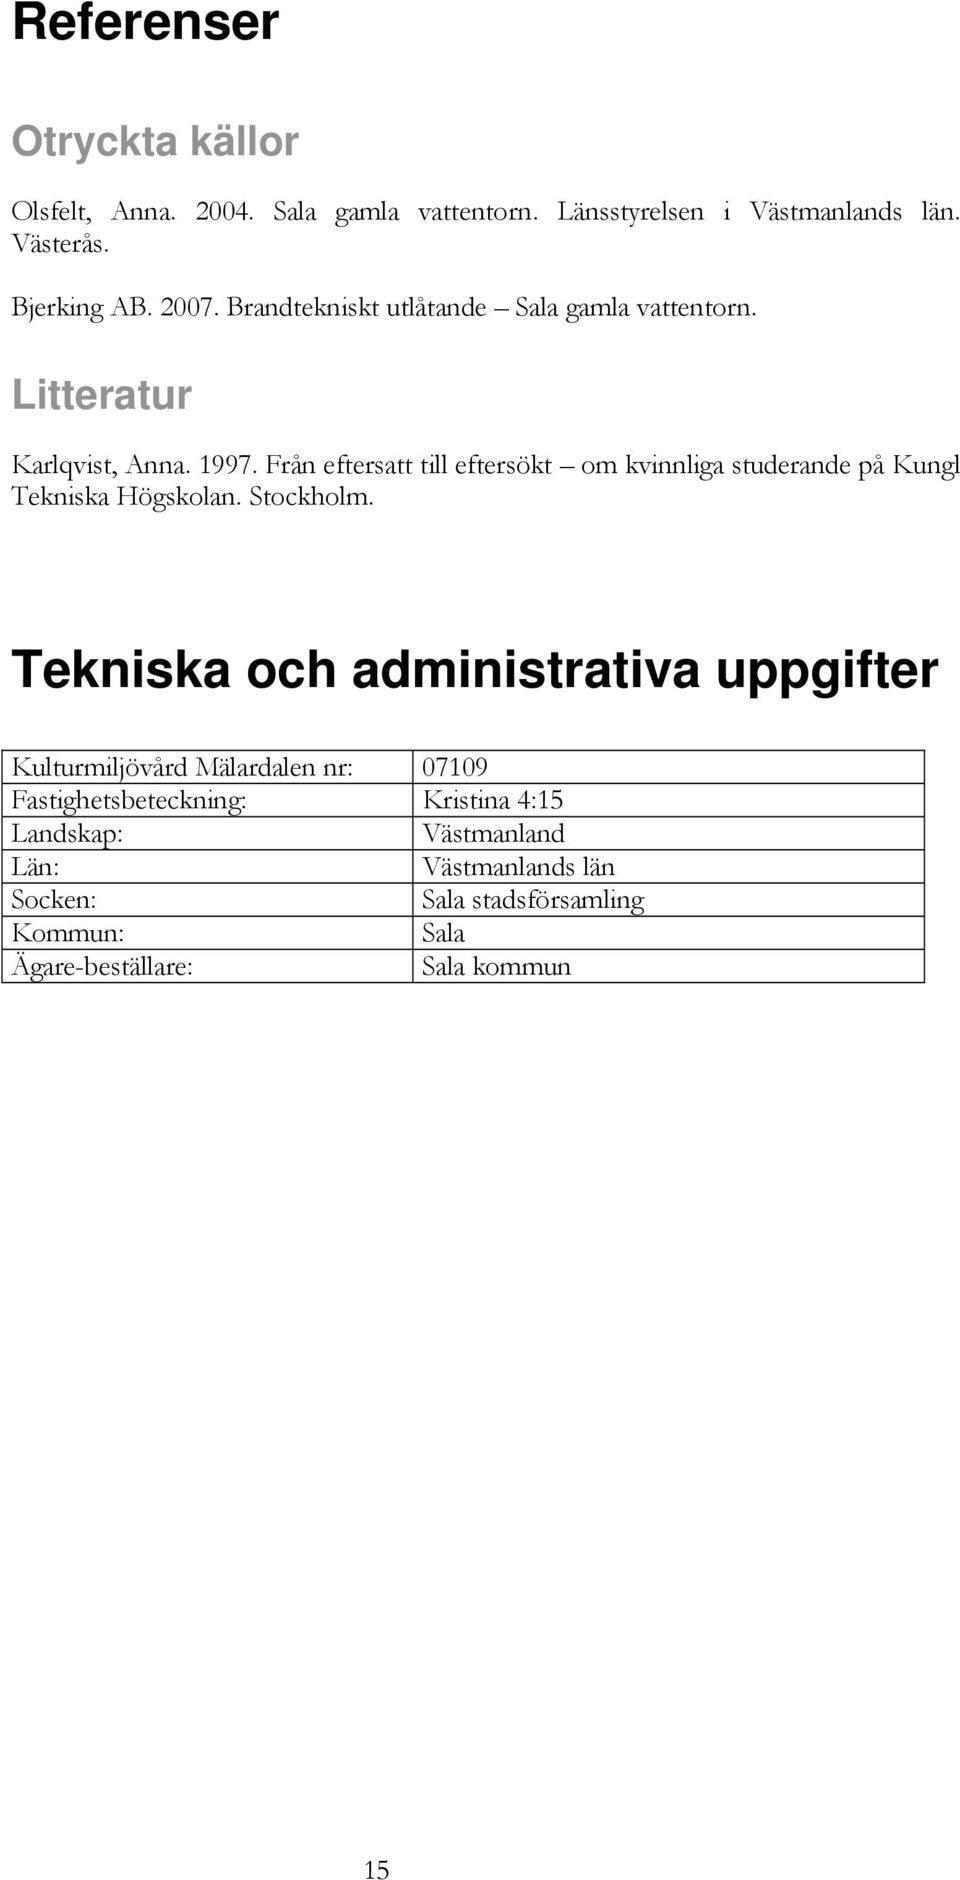 Från eftersatt till eftersökt om kvinnliga studerande på Kungl Tekniska Högskolan. Stockholm.